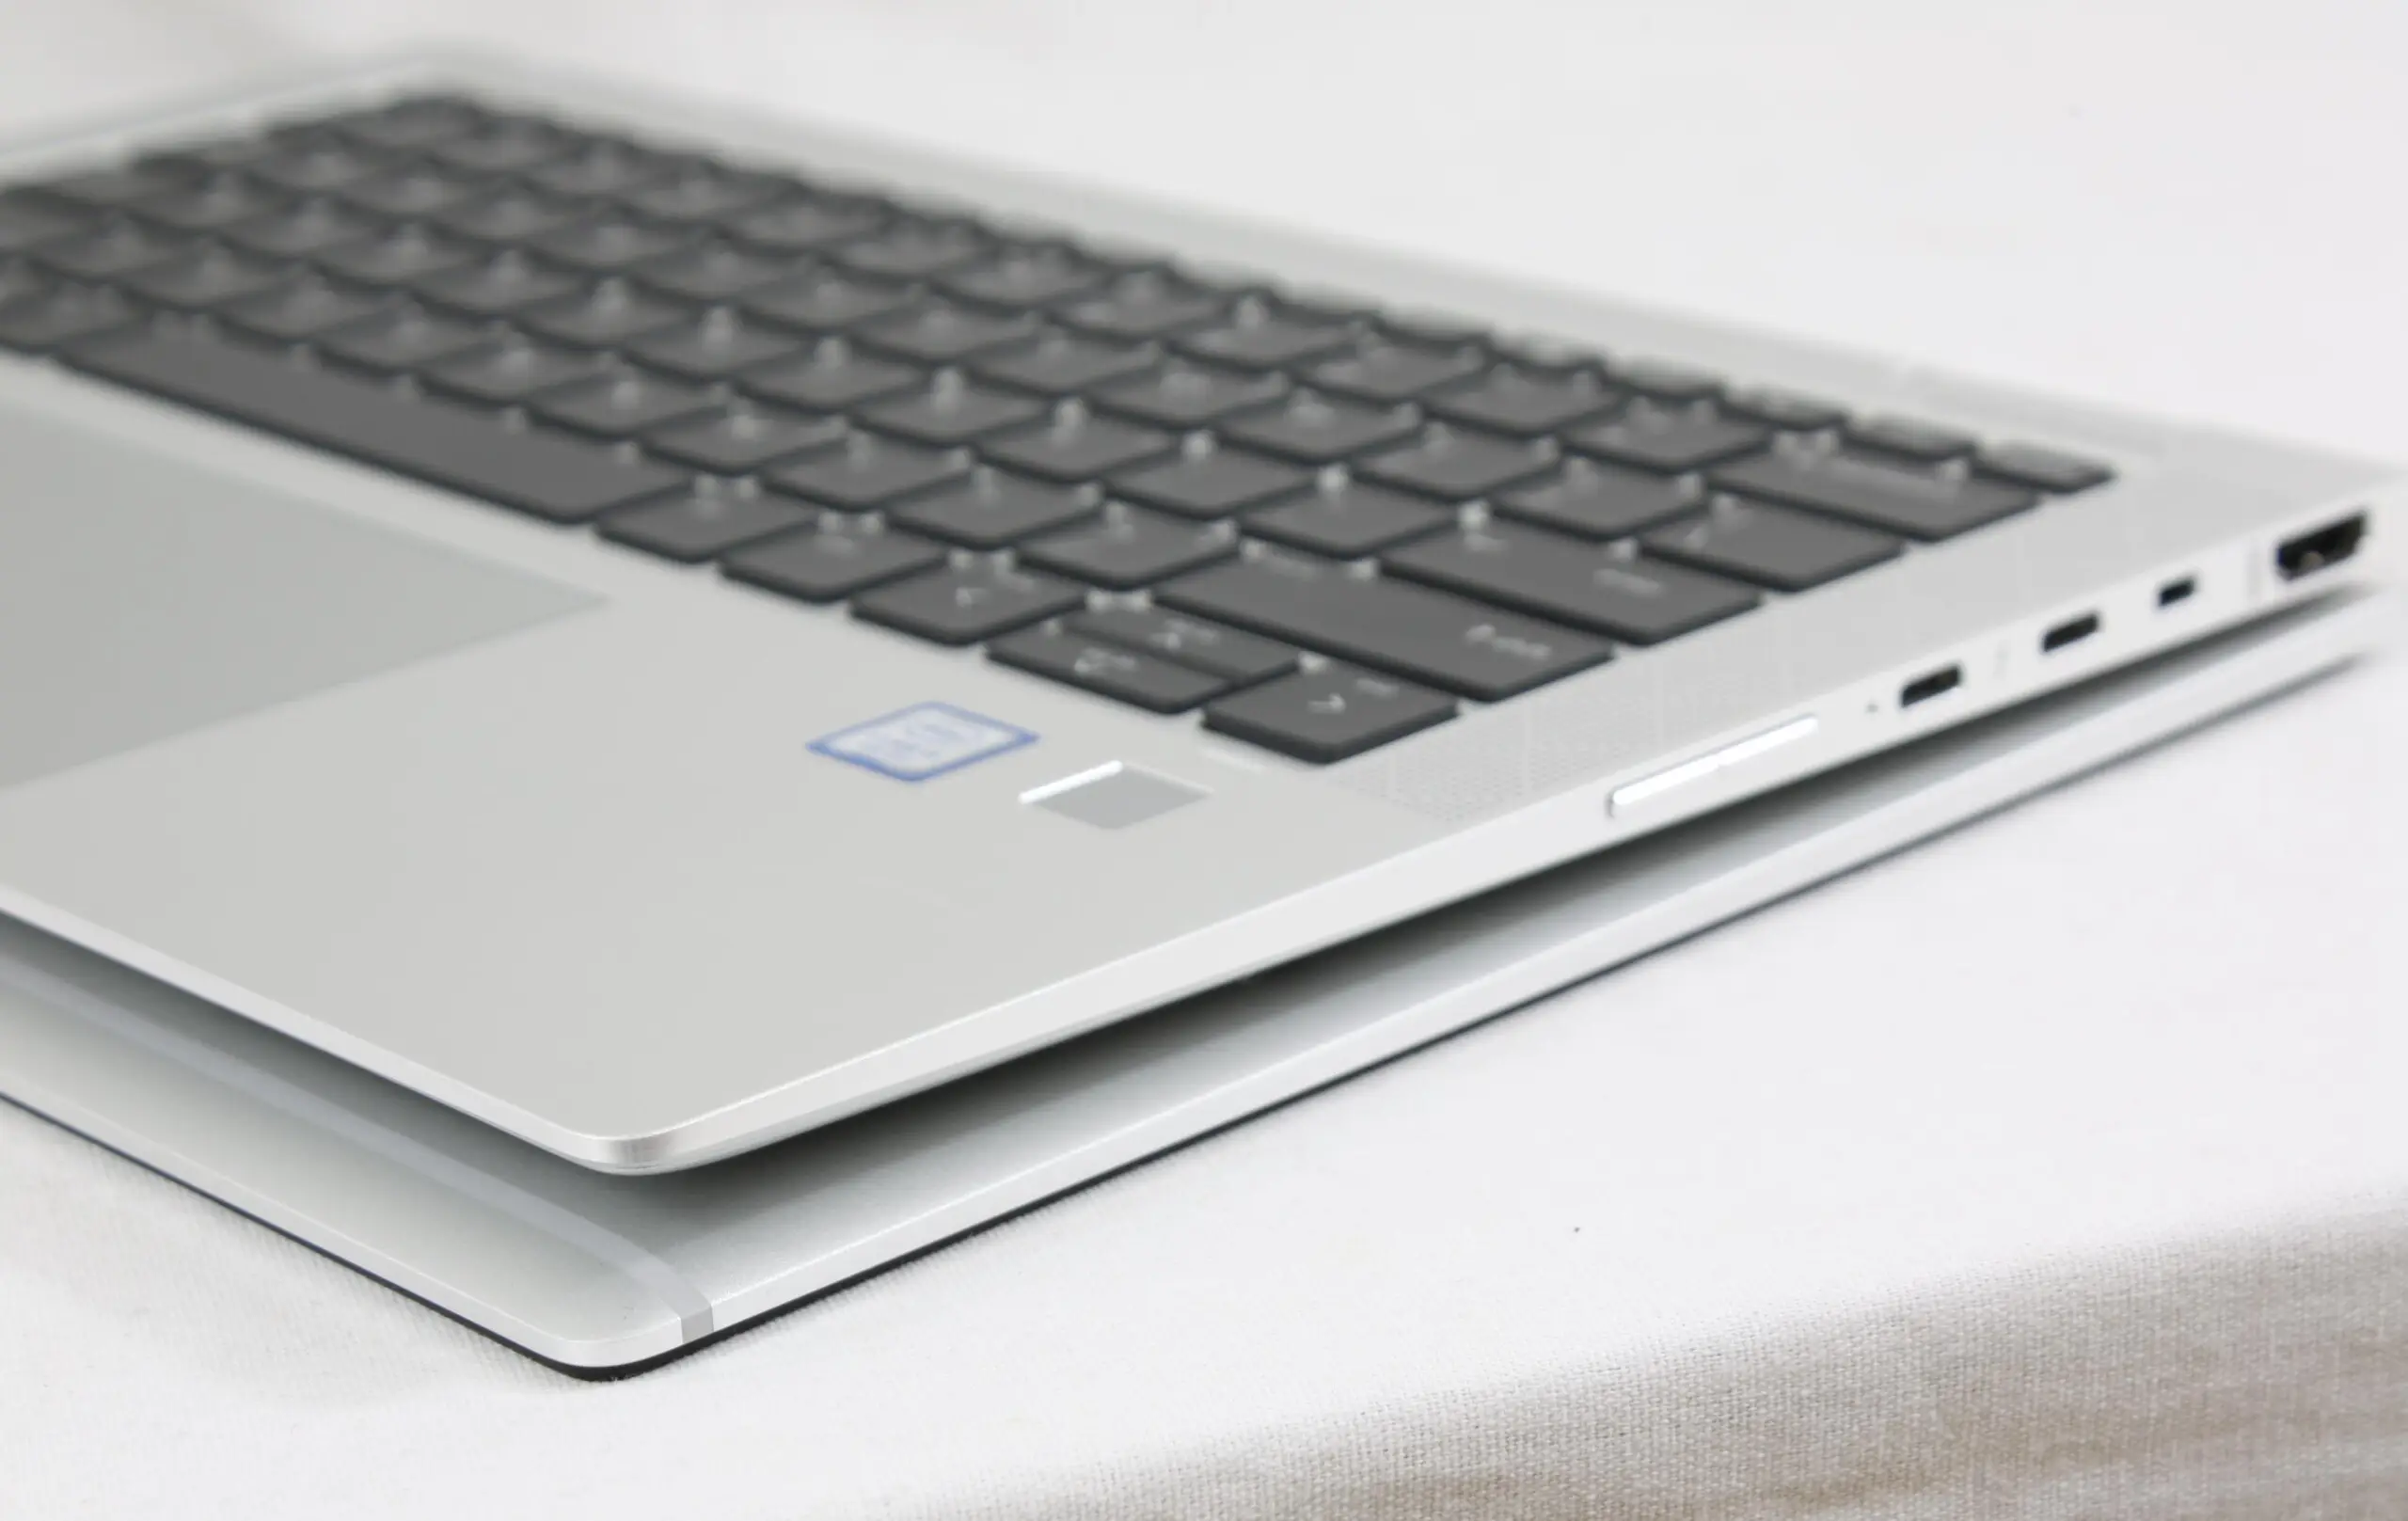 HP-EliteBook-x360-1030-G3